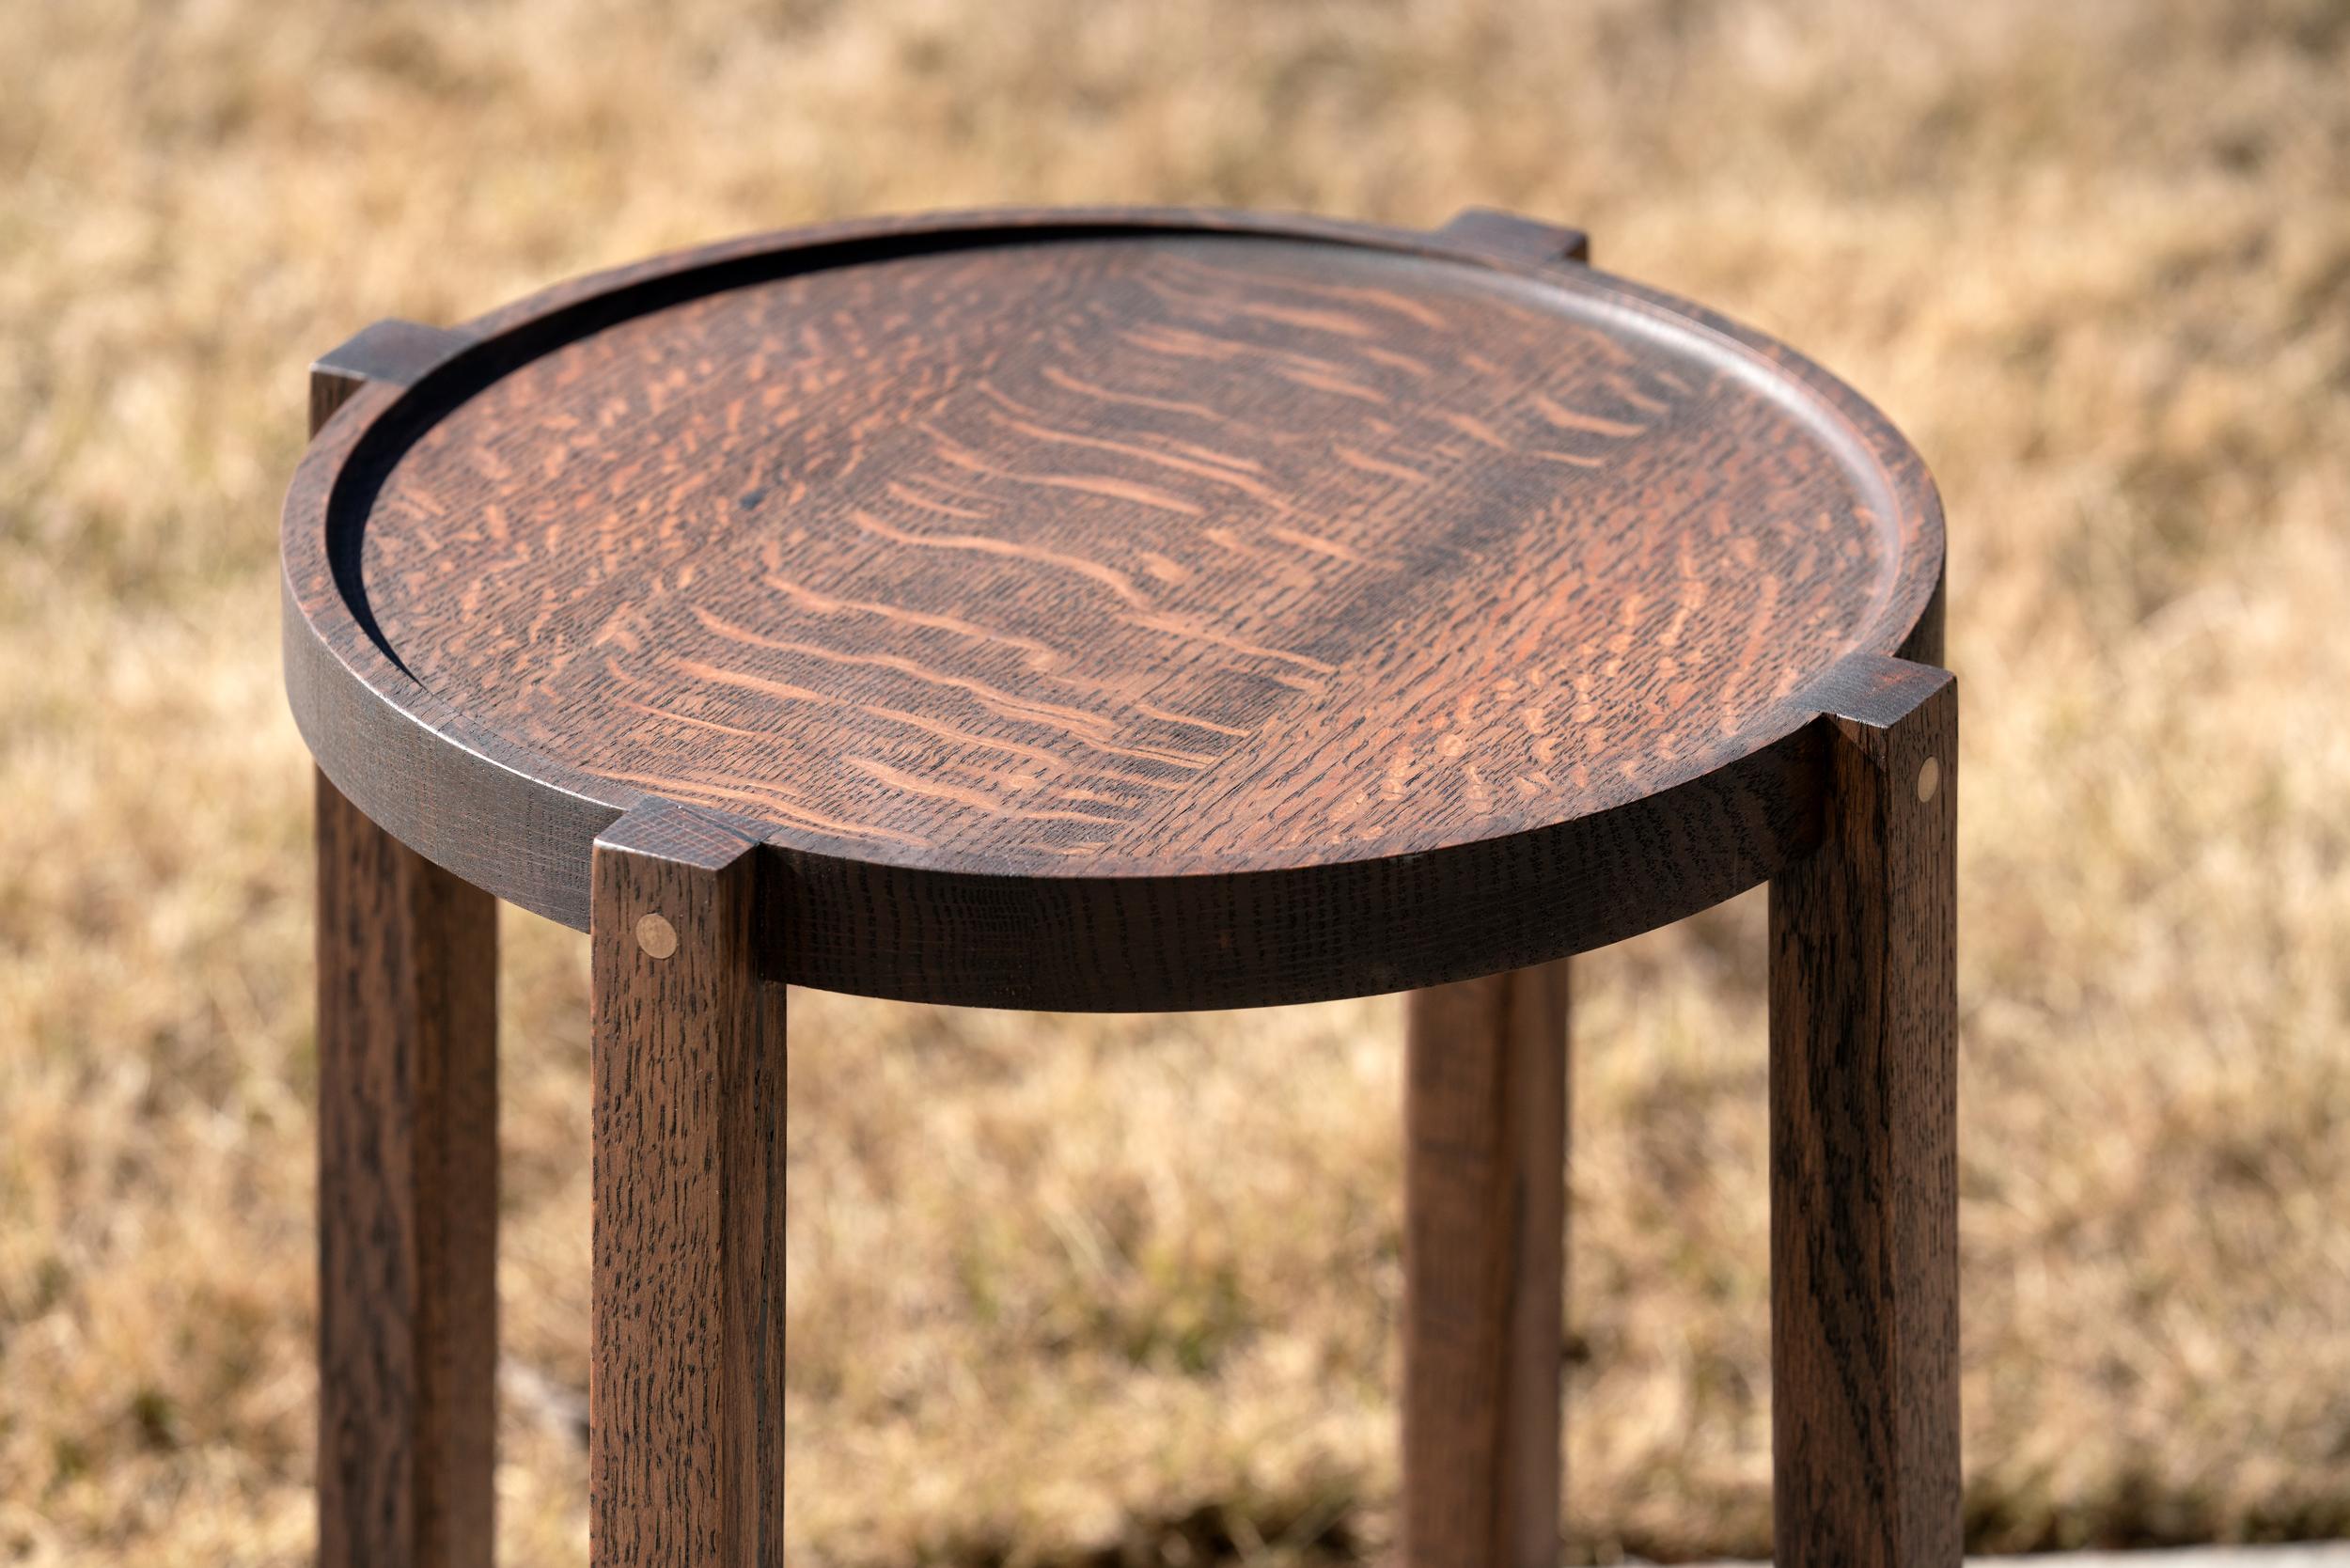 Nous appelons cette table d'appoint ronde en chêne noir avec des détails en bronze la table Waverly. Cette table est fabriquée à partir des meilleurs bois urbains recyclés et est très polyvalente. Robuste mais légère, la Waverly peut être facilement